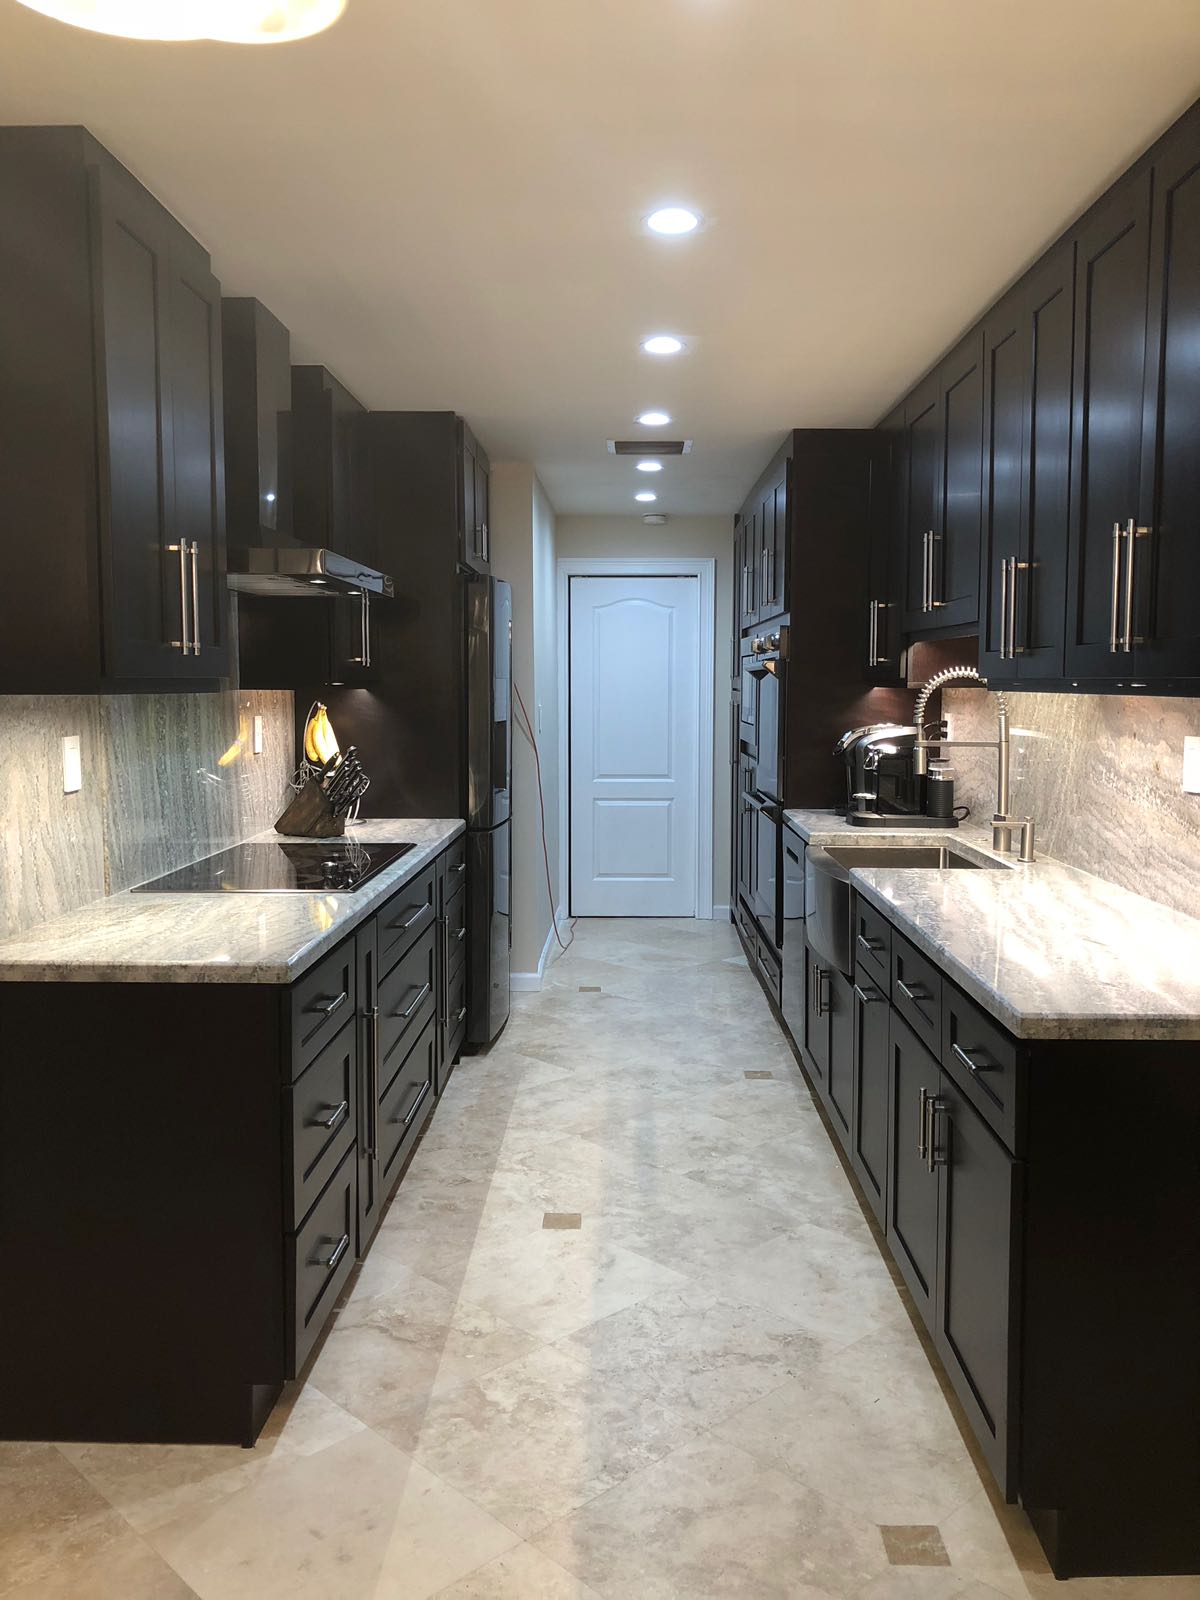 IMG-20180816-WA0006 | JVM Kitchen Cabinets & Granite